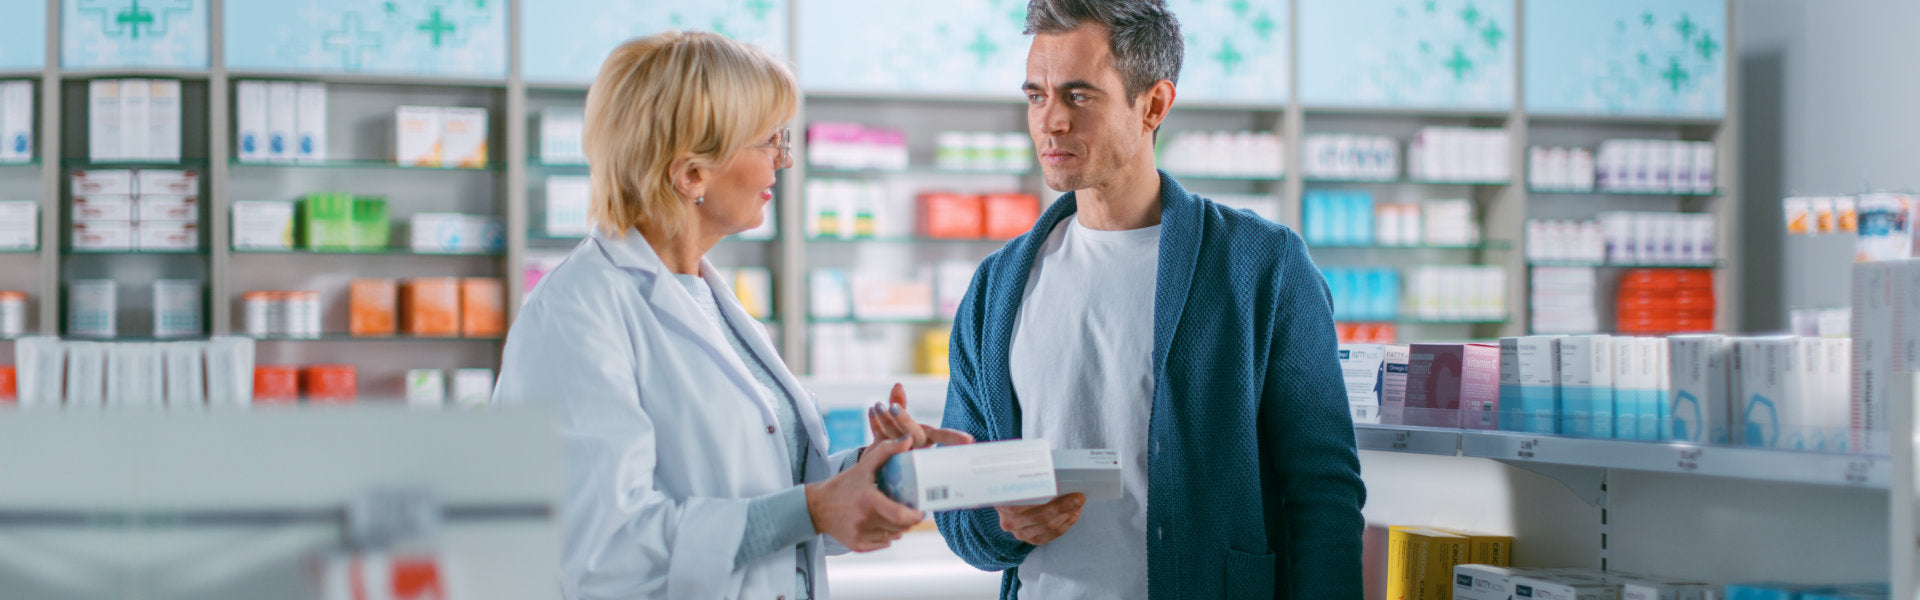 Pharmacist explaining to Customer